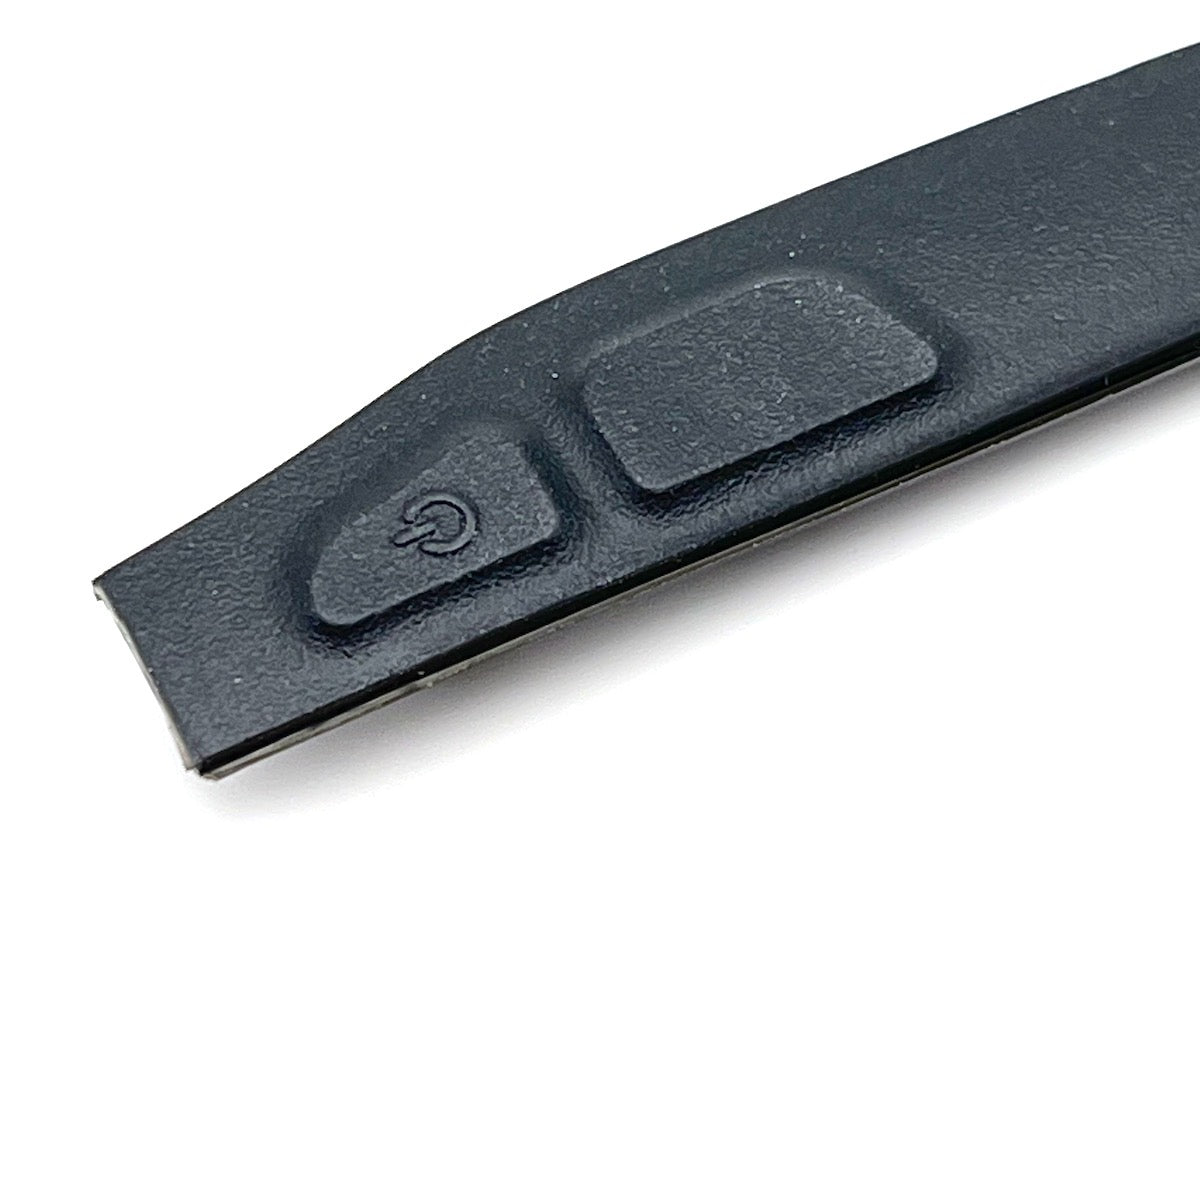 Rubber power button for Garmin Oregon 600, 600t, 650, 650t case flex part cover